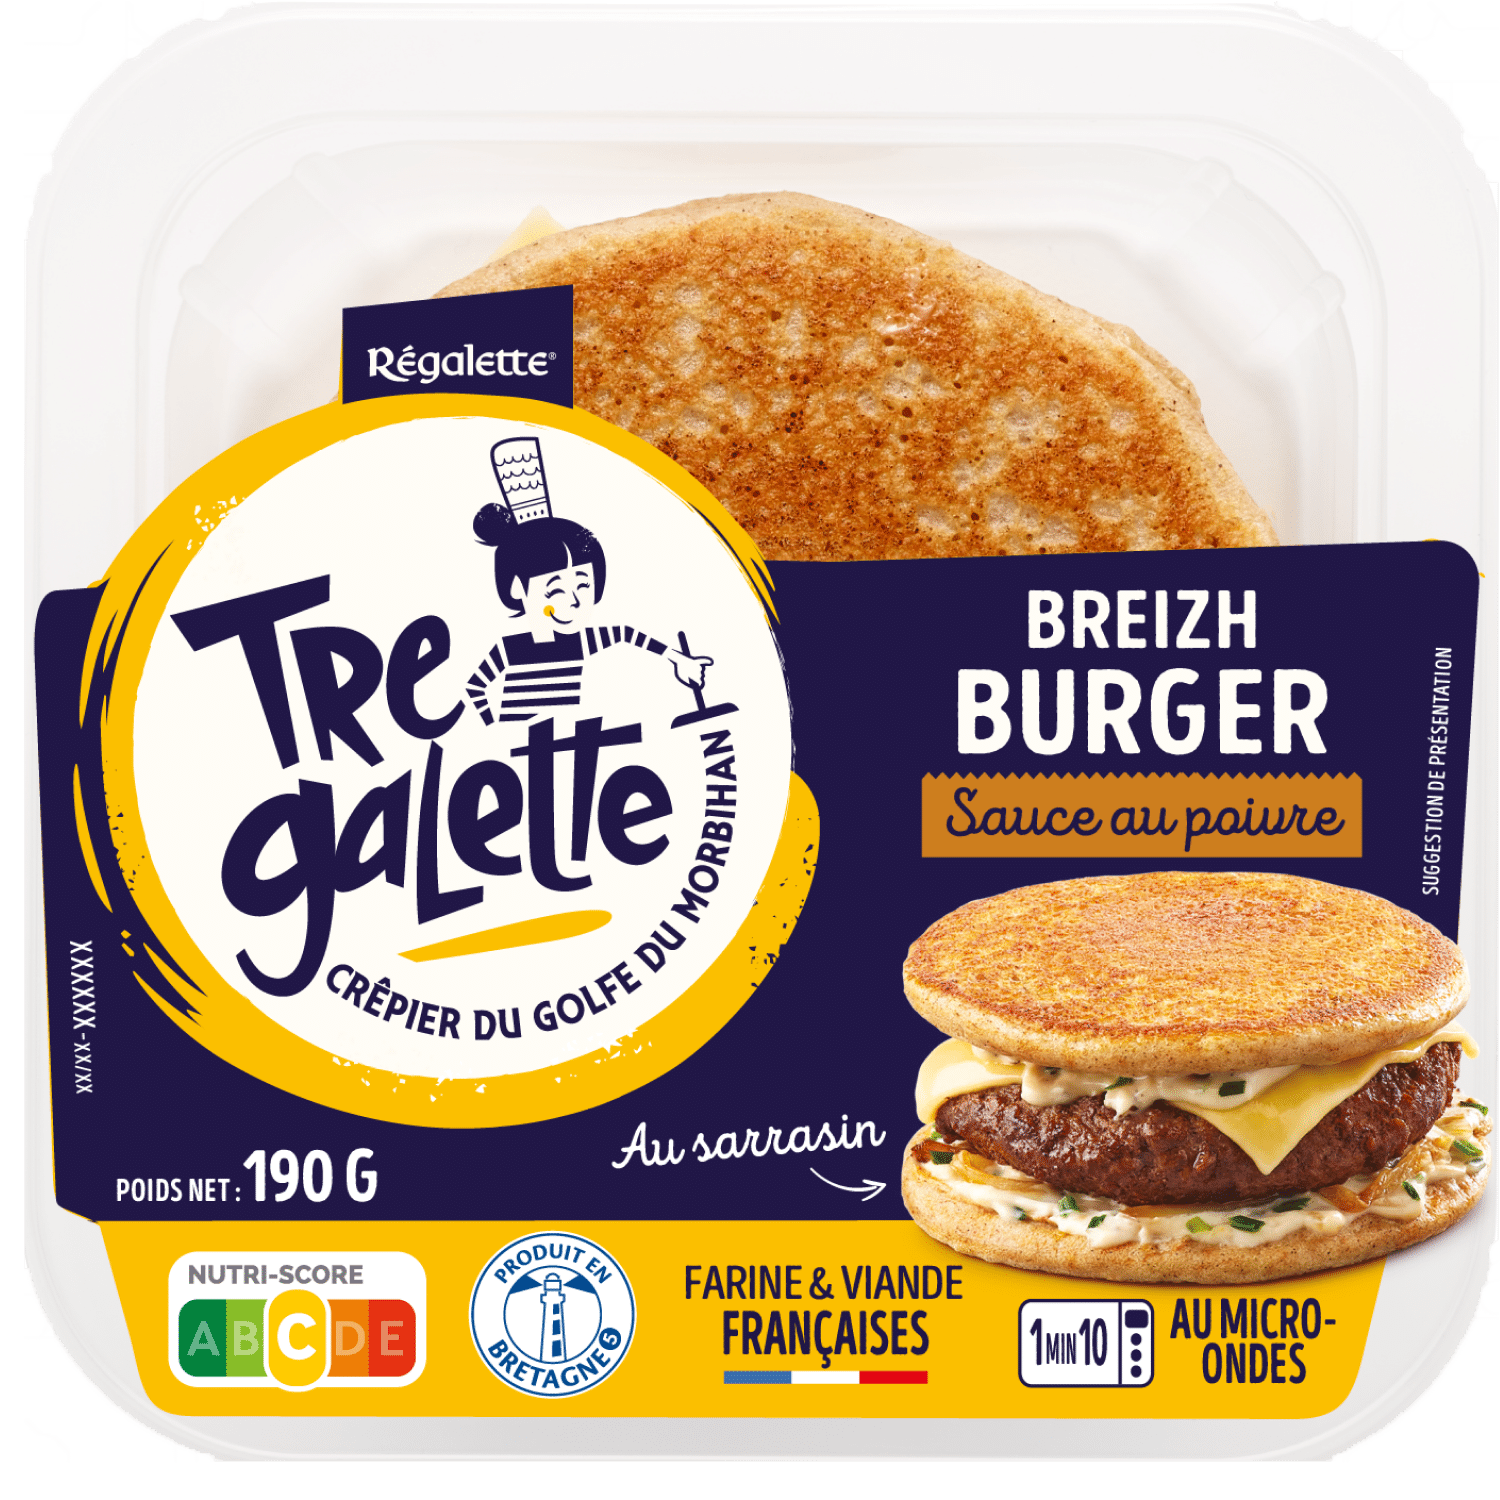 packshot de l'emballage réalisé par mdp design d'un burger breton de la marque tre galette